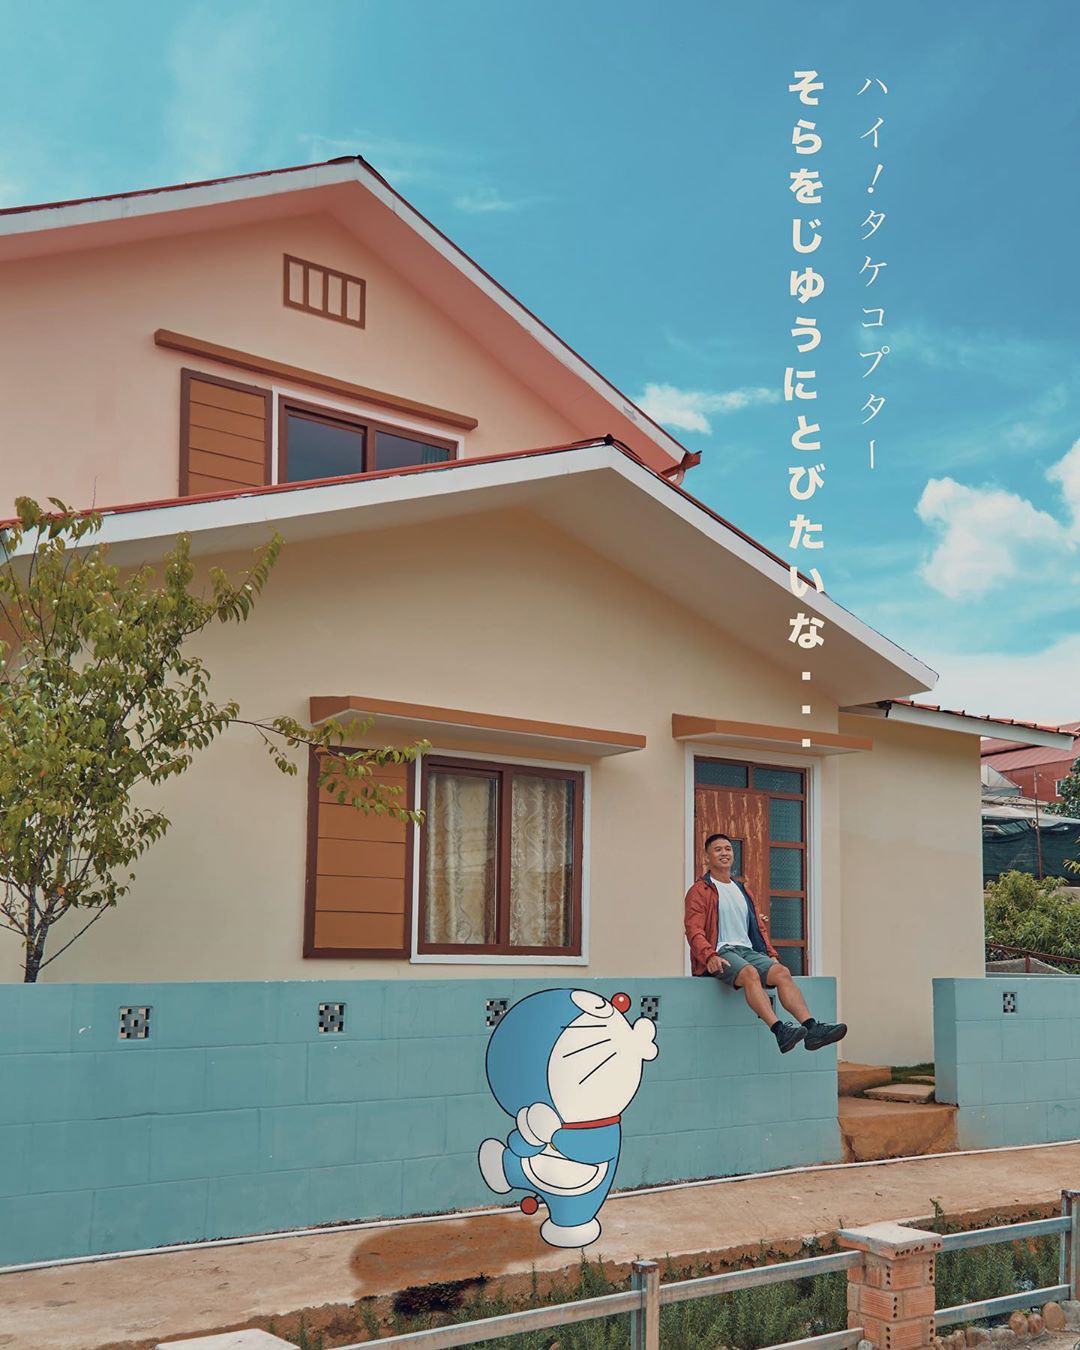 Ngắm nhìn ngôi nhà của Nobita được dựng hình 3d bằng phần mềm đồ họa